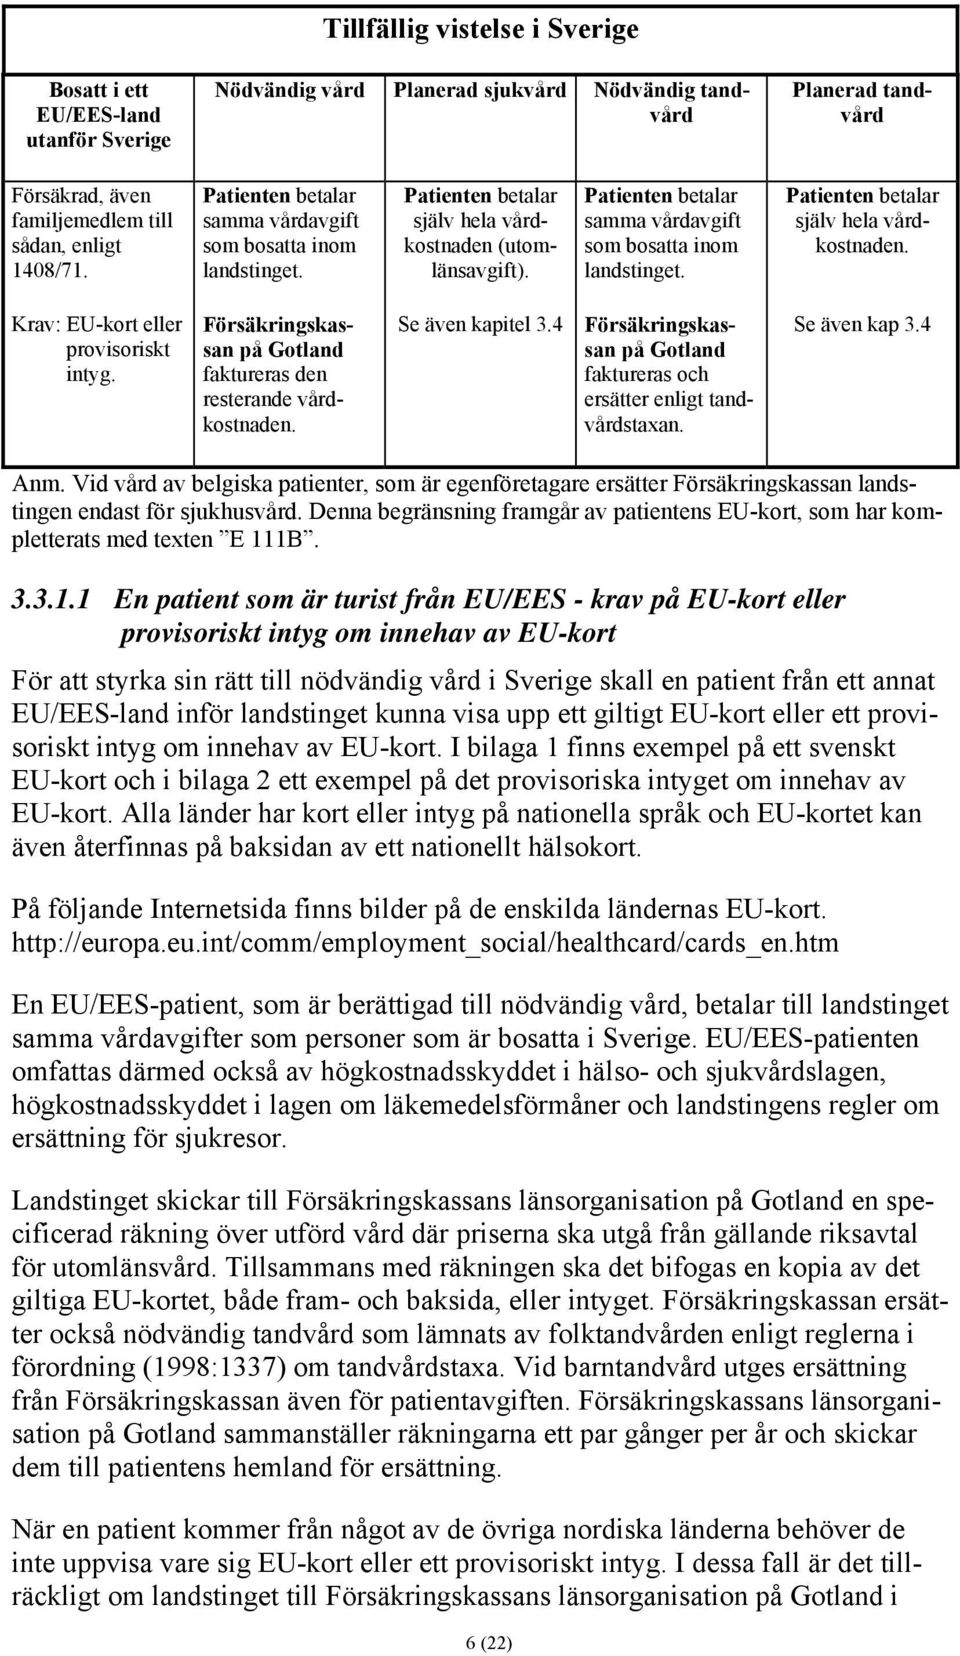 Försäkringskassan på Gotland faktureras den resterande vårdkostnaden. Se även kapitel 3.4 Försäkringskassan på Gotland faktureras och ersätter enligt tandvårdstaxan. Se även kap 3.4 Anm.